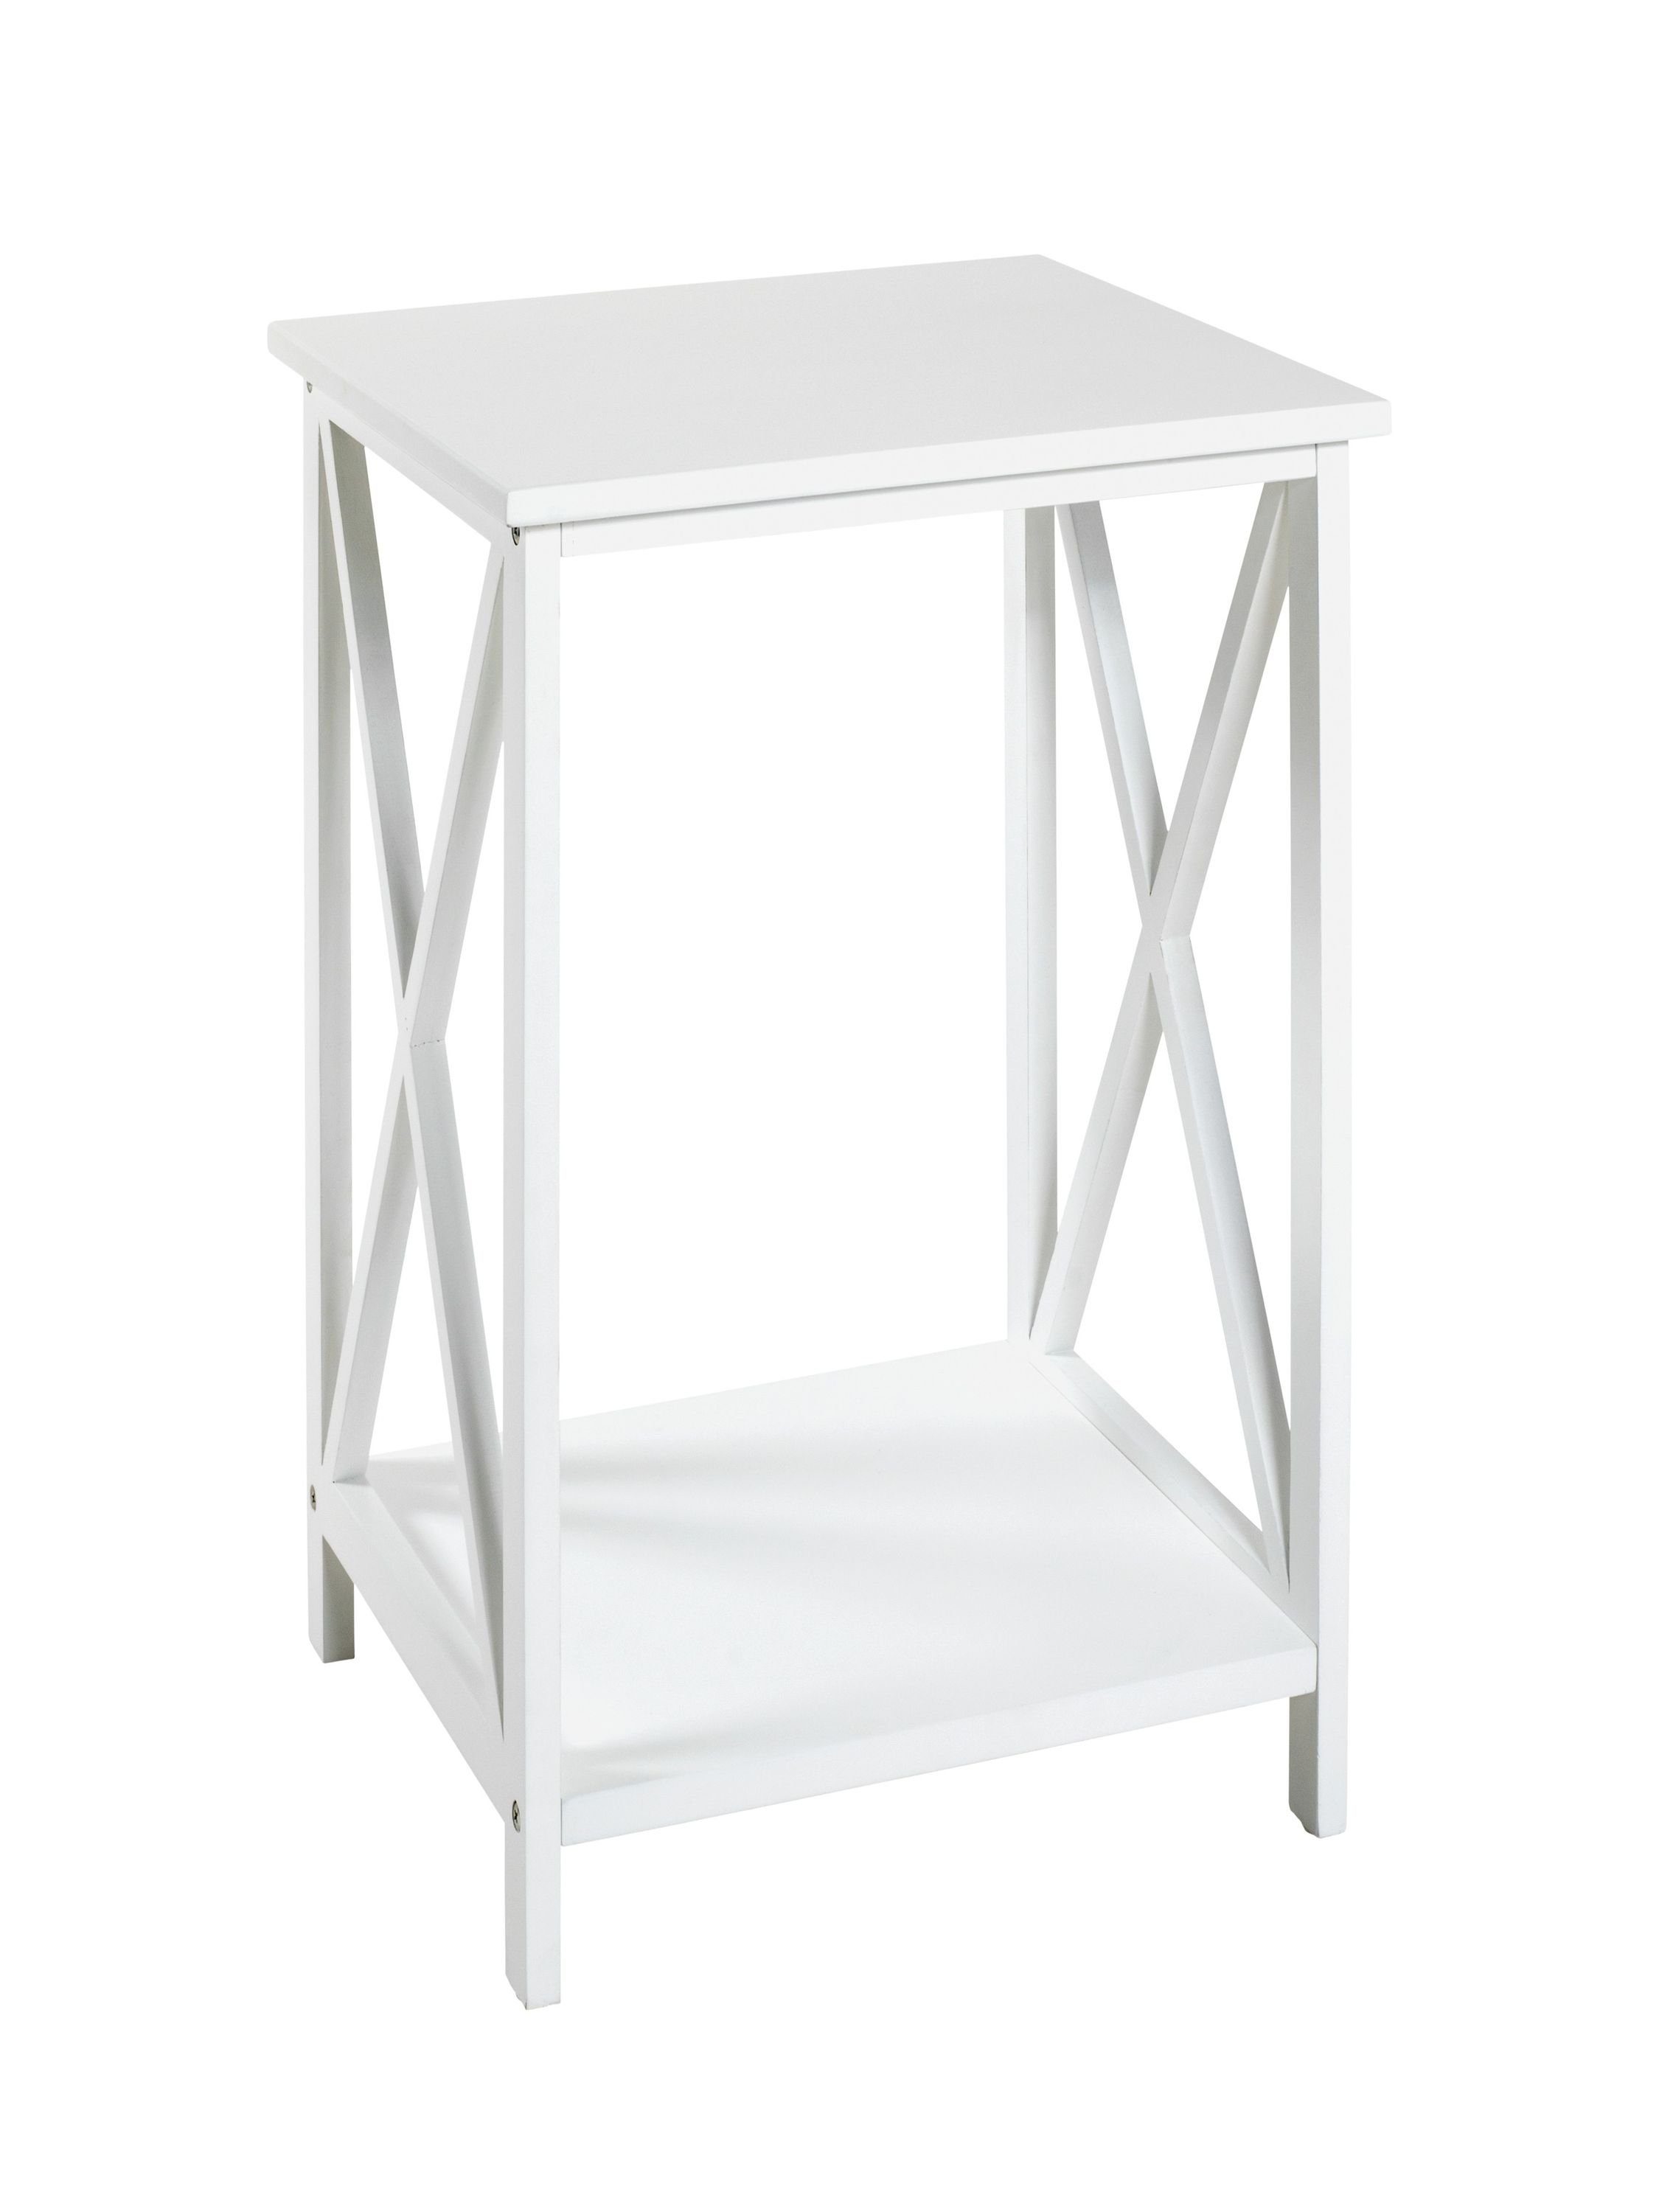 30x50x30 HAKU cm) Beistelltisch (BHT 30x50x30 HAKU Möbel weiß Beistelltisch, cm Beistelltisch BHT